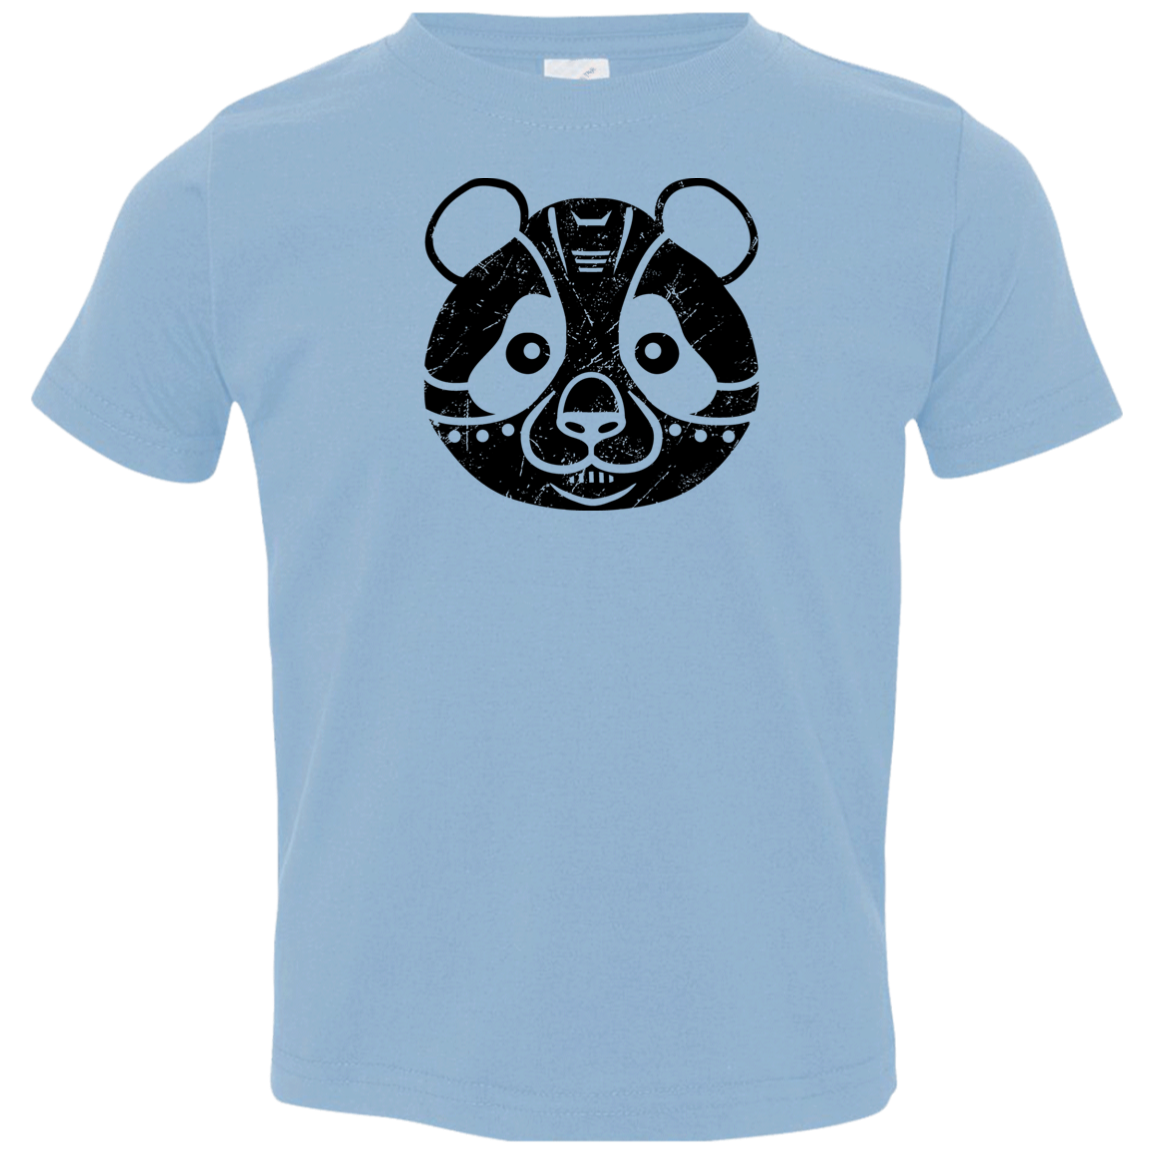 Black Distressed Emblem T-Shirt for Toddlers (Panda/Fuji)